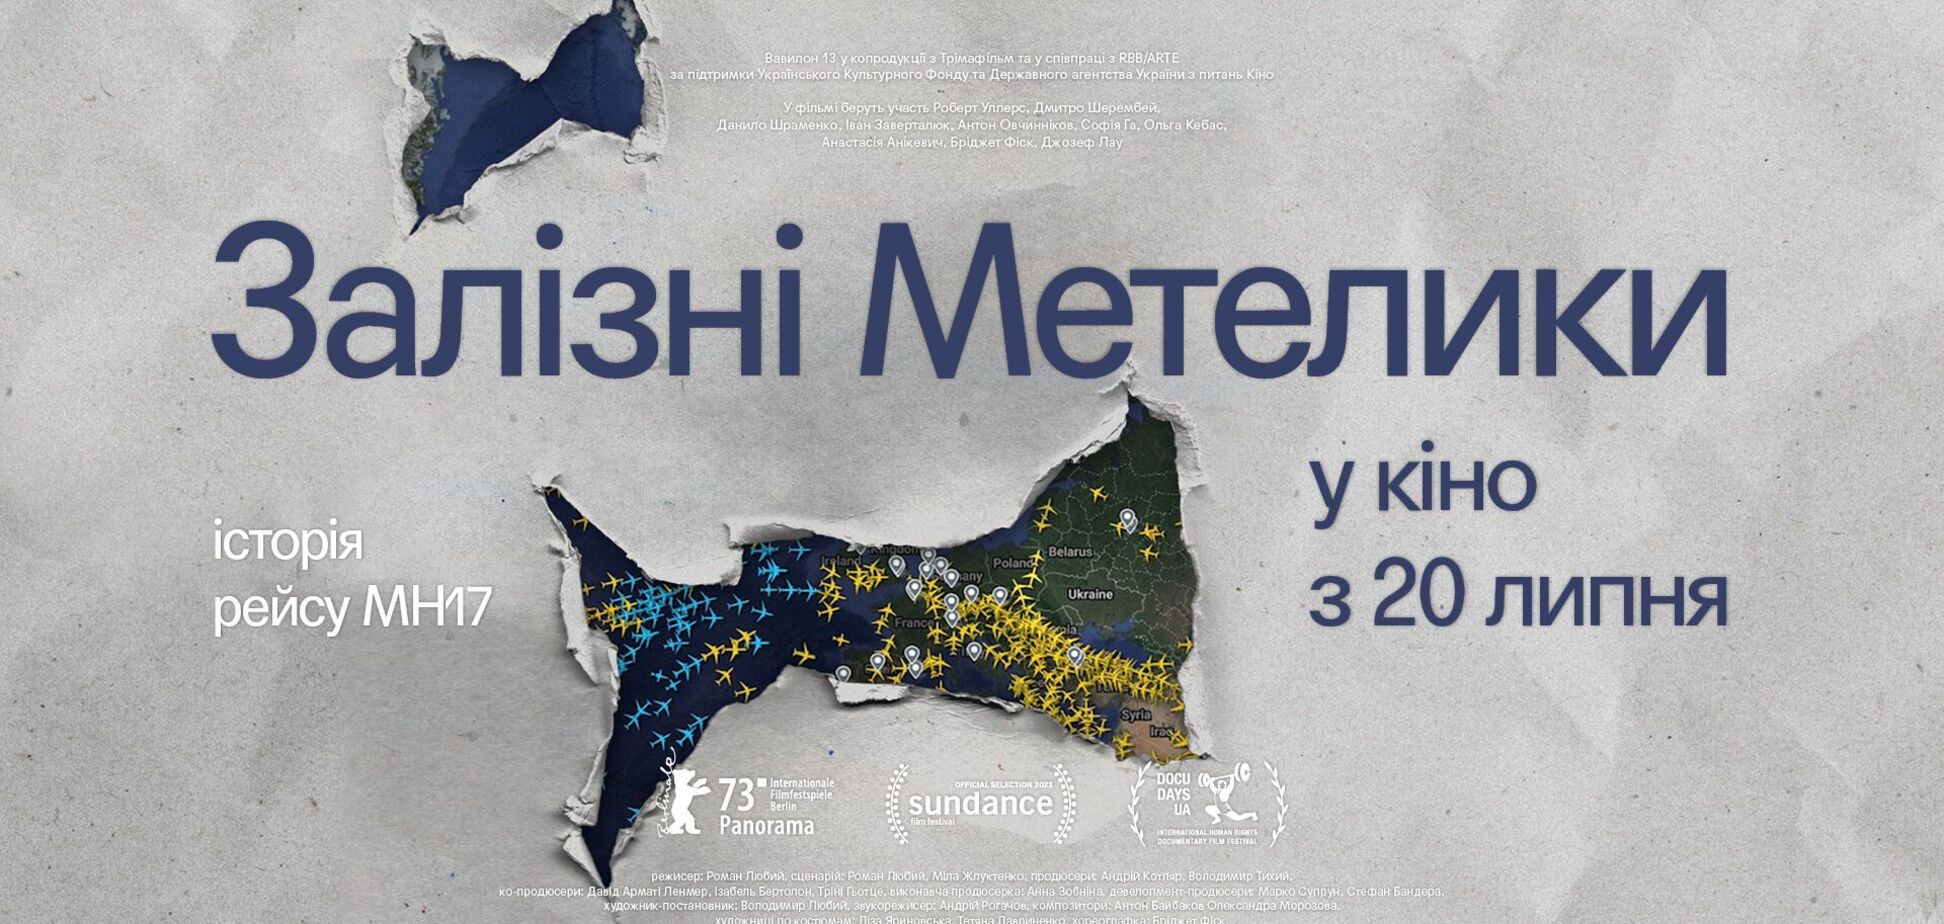 До роковин трагедії рейсу MH17: в український прокат вийде стрічка 'Залізні метелики'